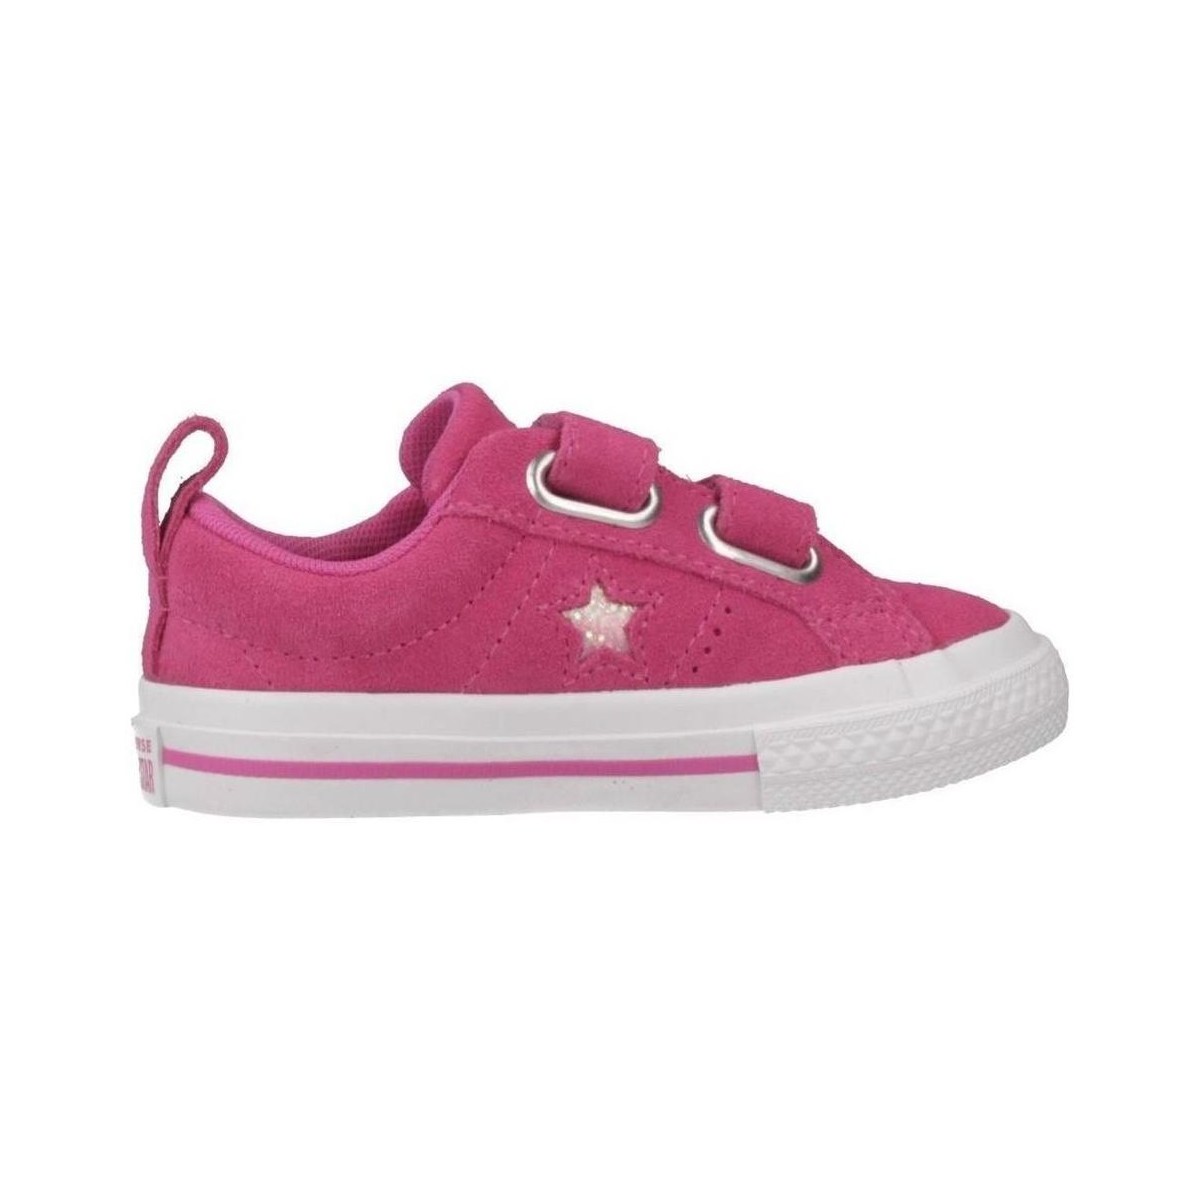 Topánky Dievča Módne tenisky Converse ONE STAR 2V OX Ružová